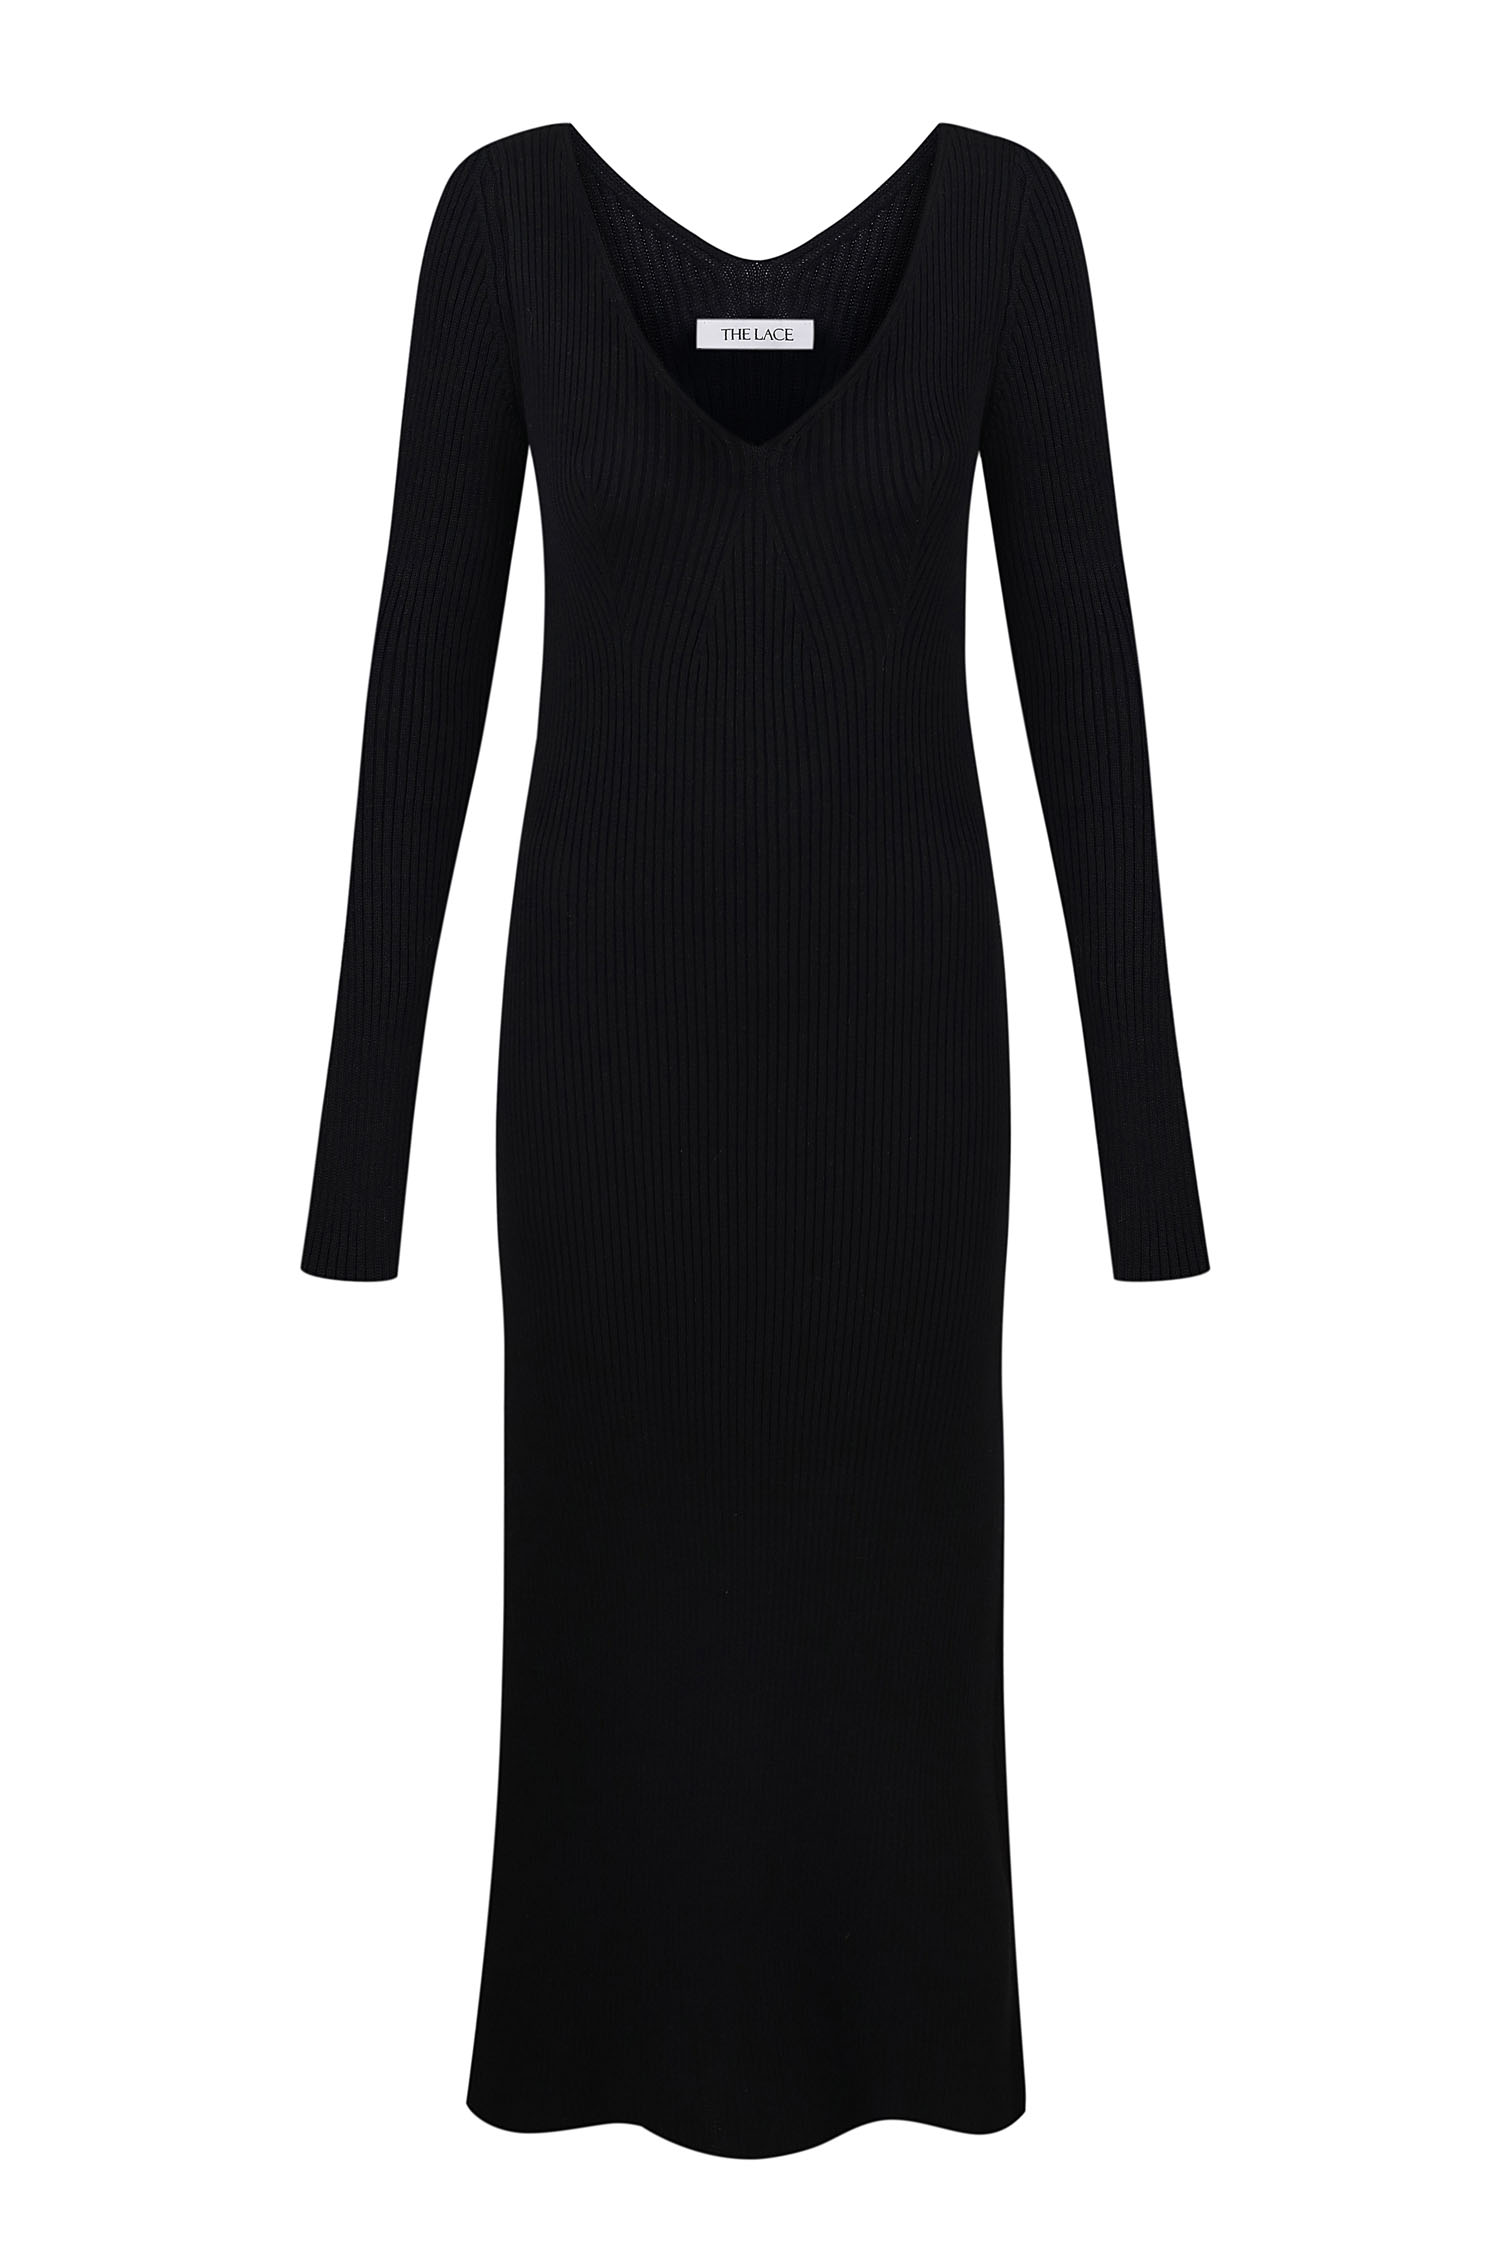 Трикотажна сукня міді з відкритою спиною чорна - THE LACE фото 127947